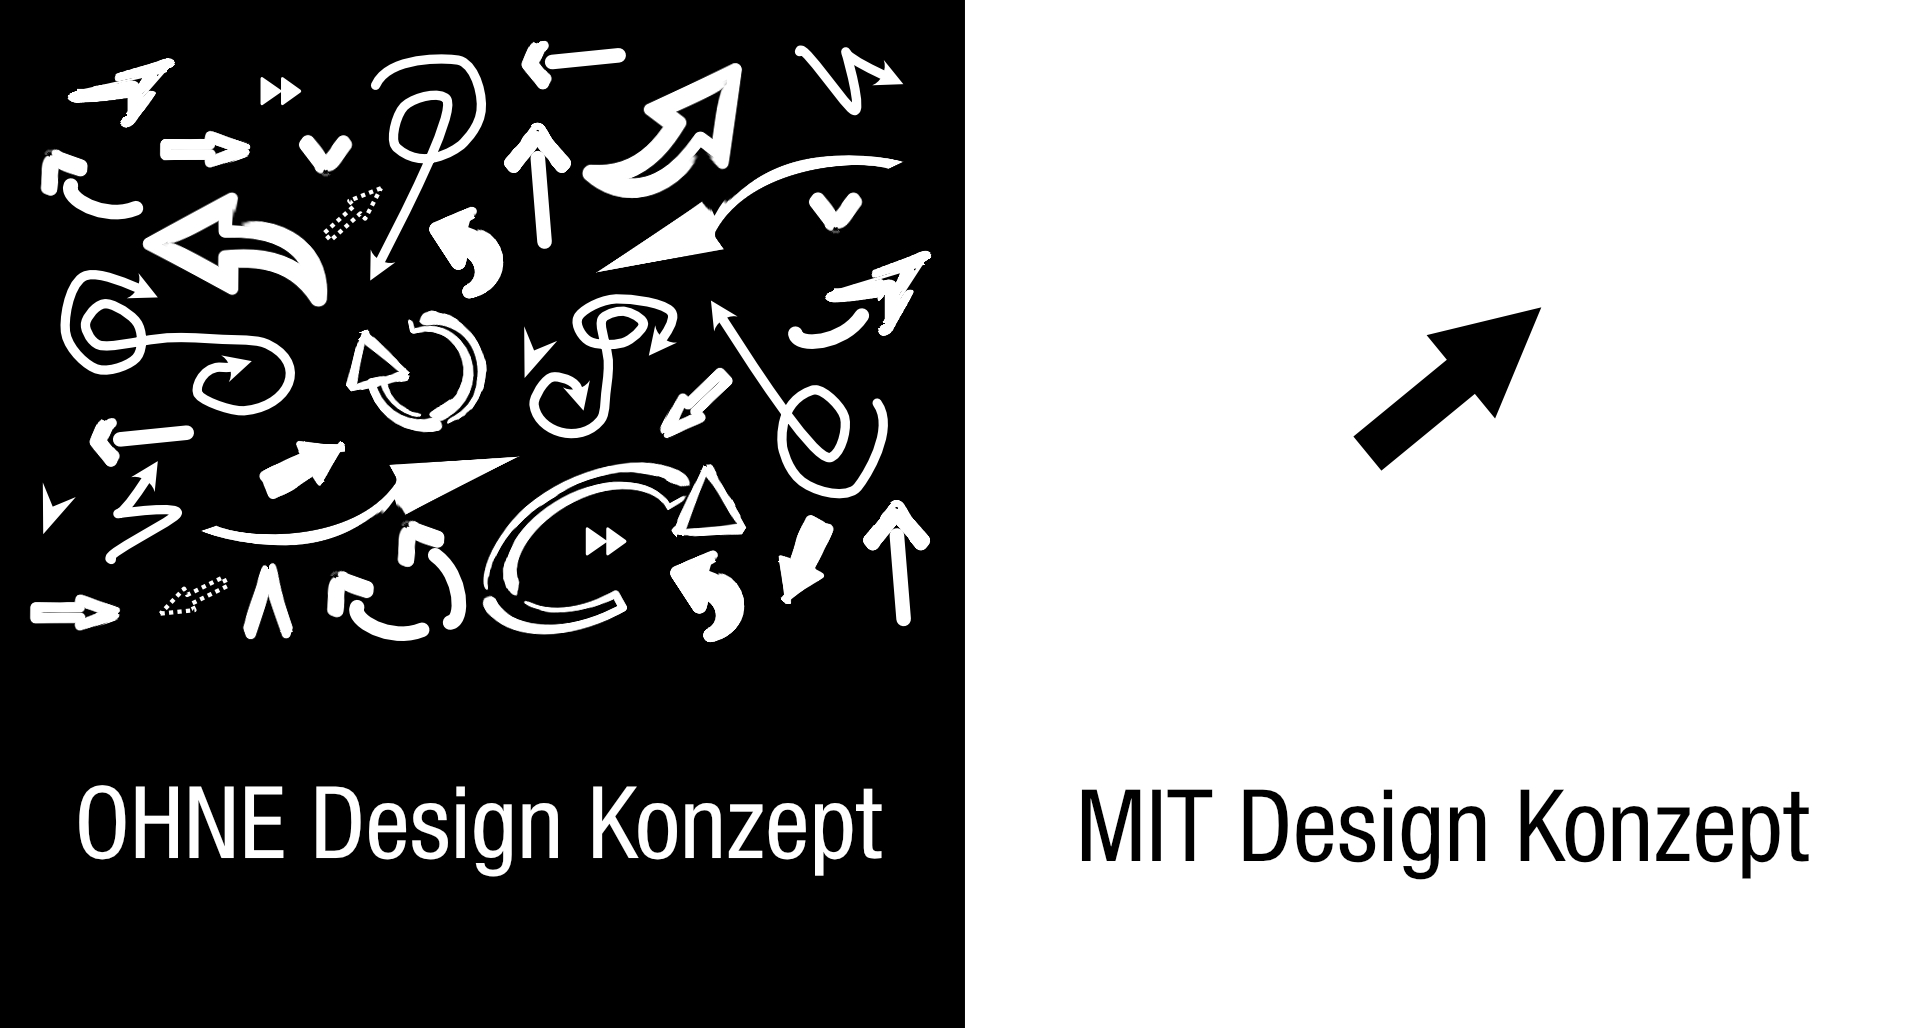 Unterschied mit oder ohne Design Konzept